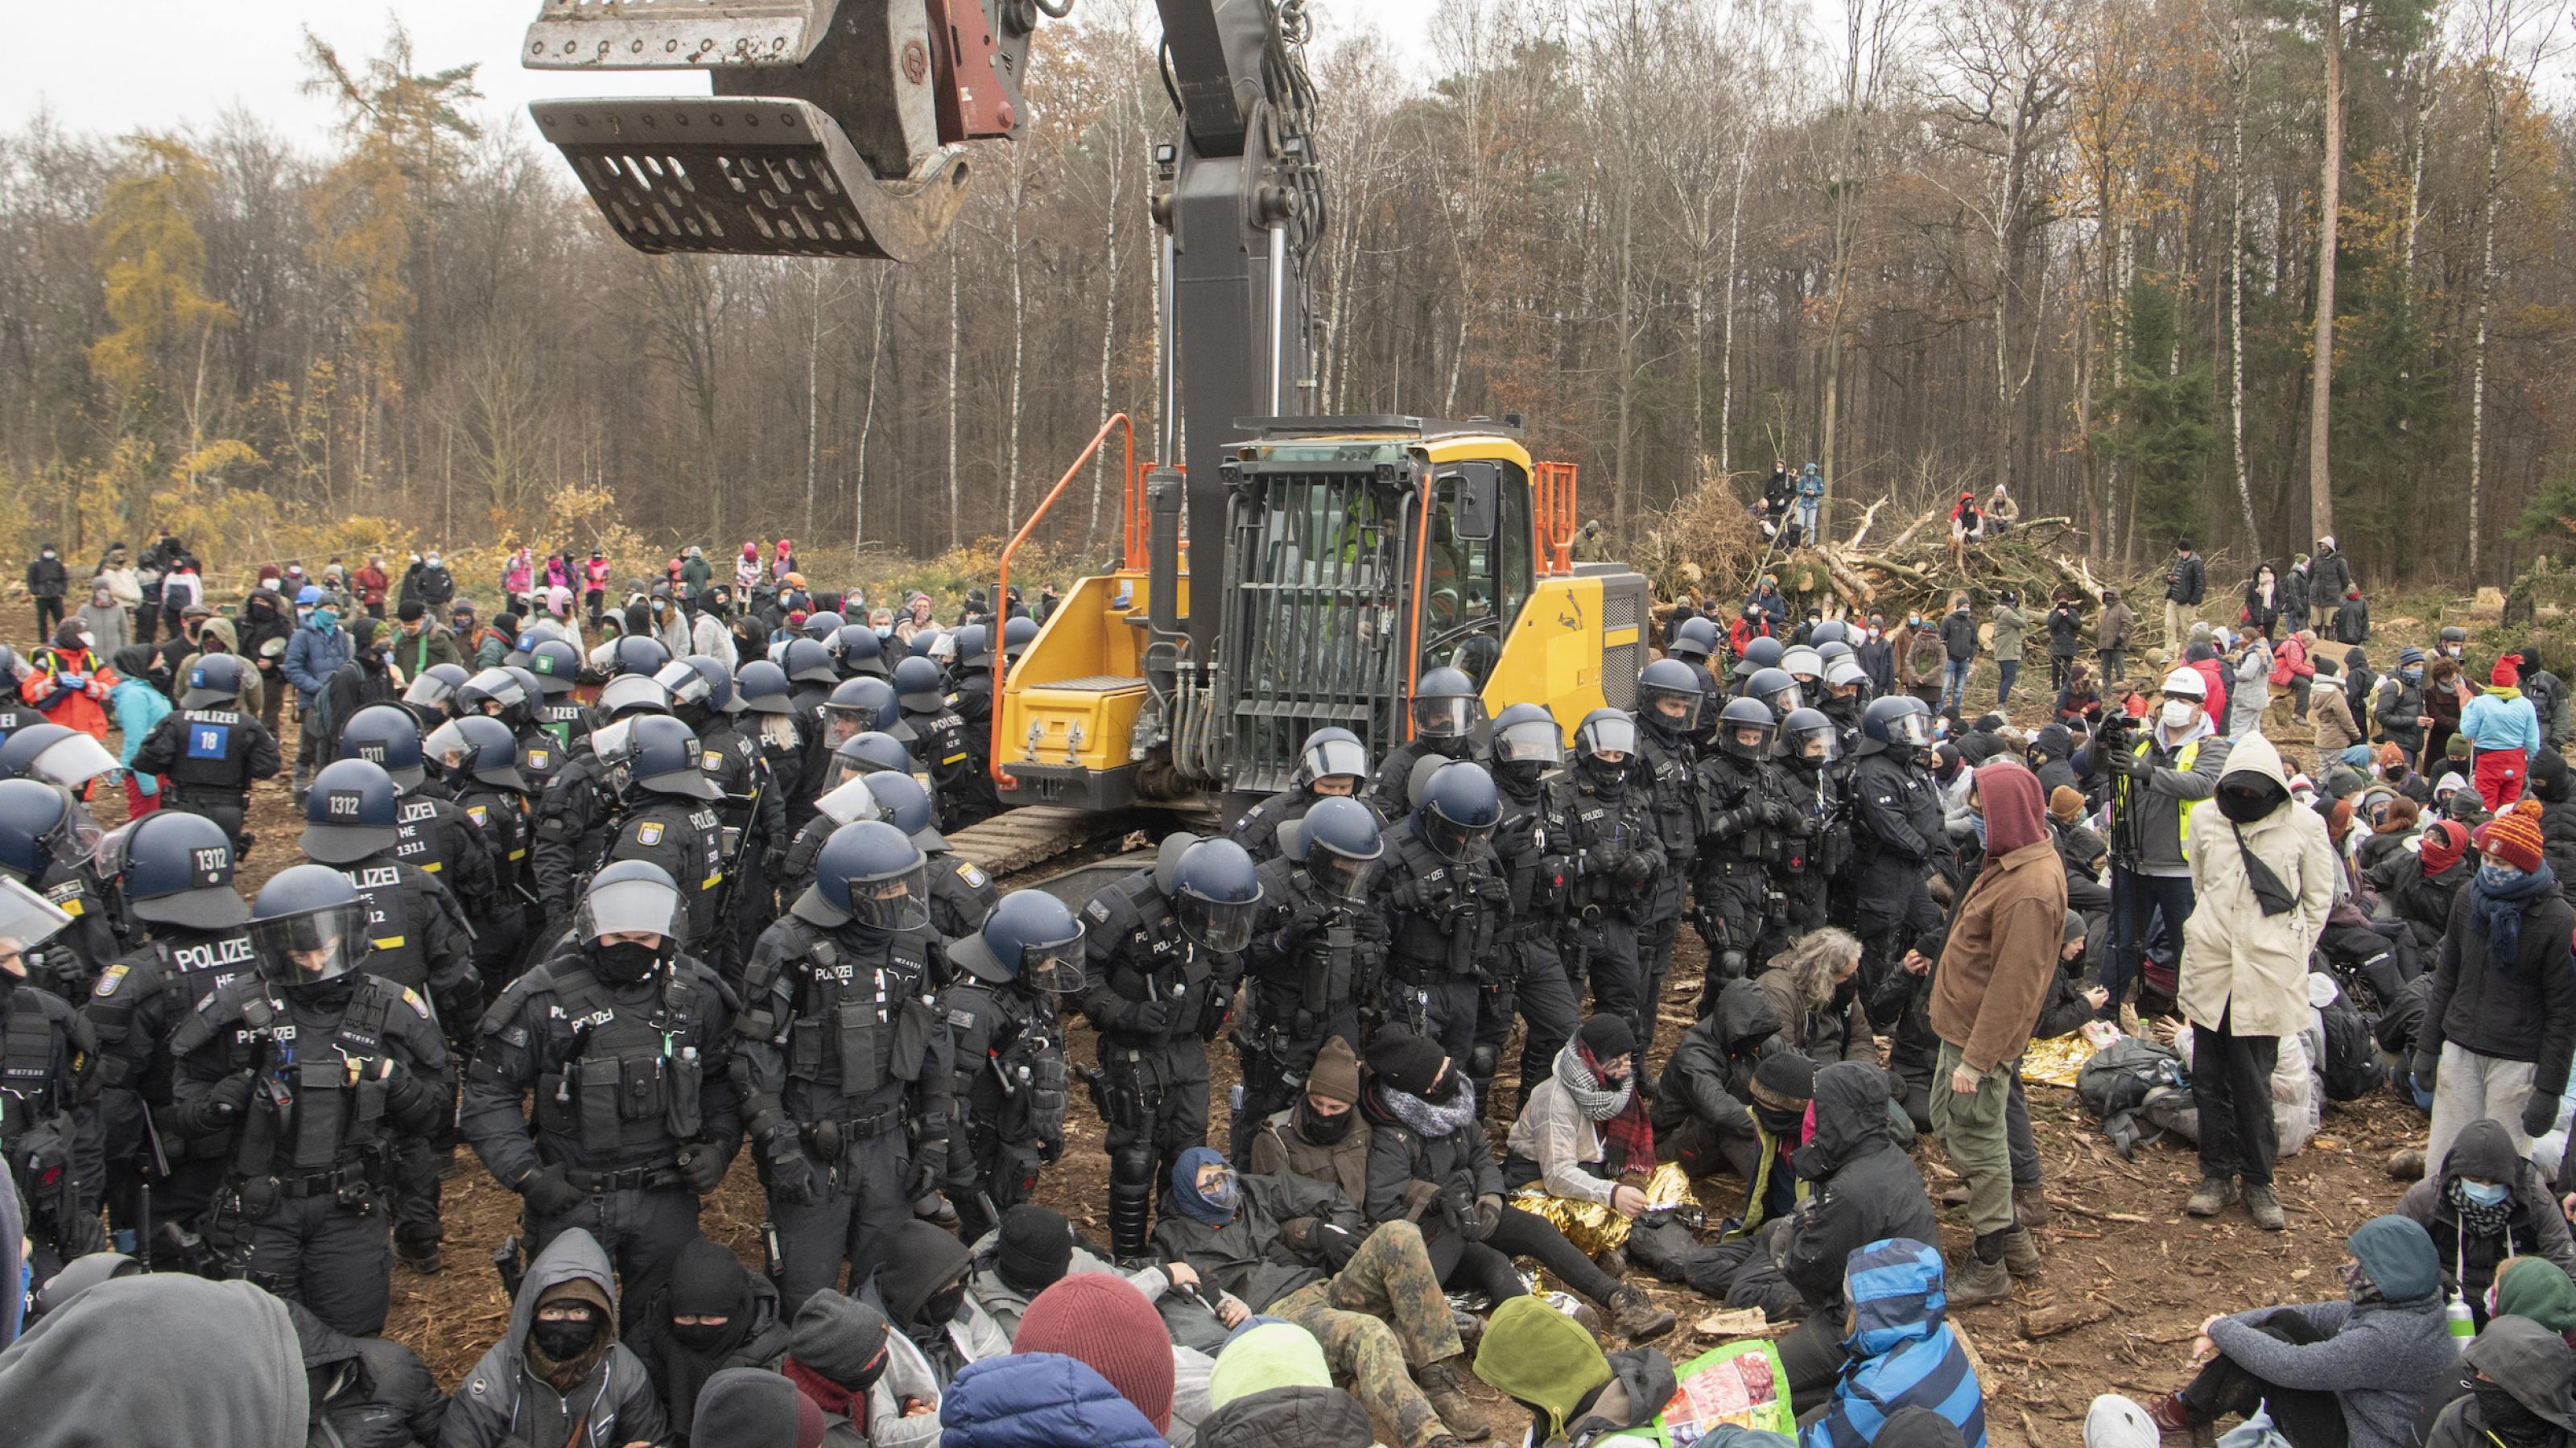 Der Dannenröder Forst soll einer Autobahn weichen. Aktivistînnen haben Ende 2020 auf der Rodungsfläche im Wald einen Bagger blockiert. Polizistïnnen stellen sich ihnen entgegen.